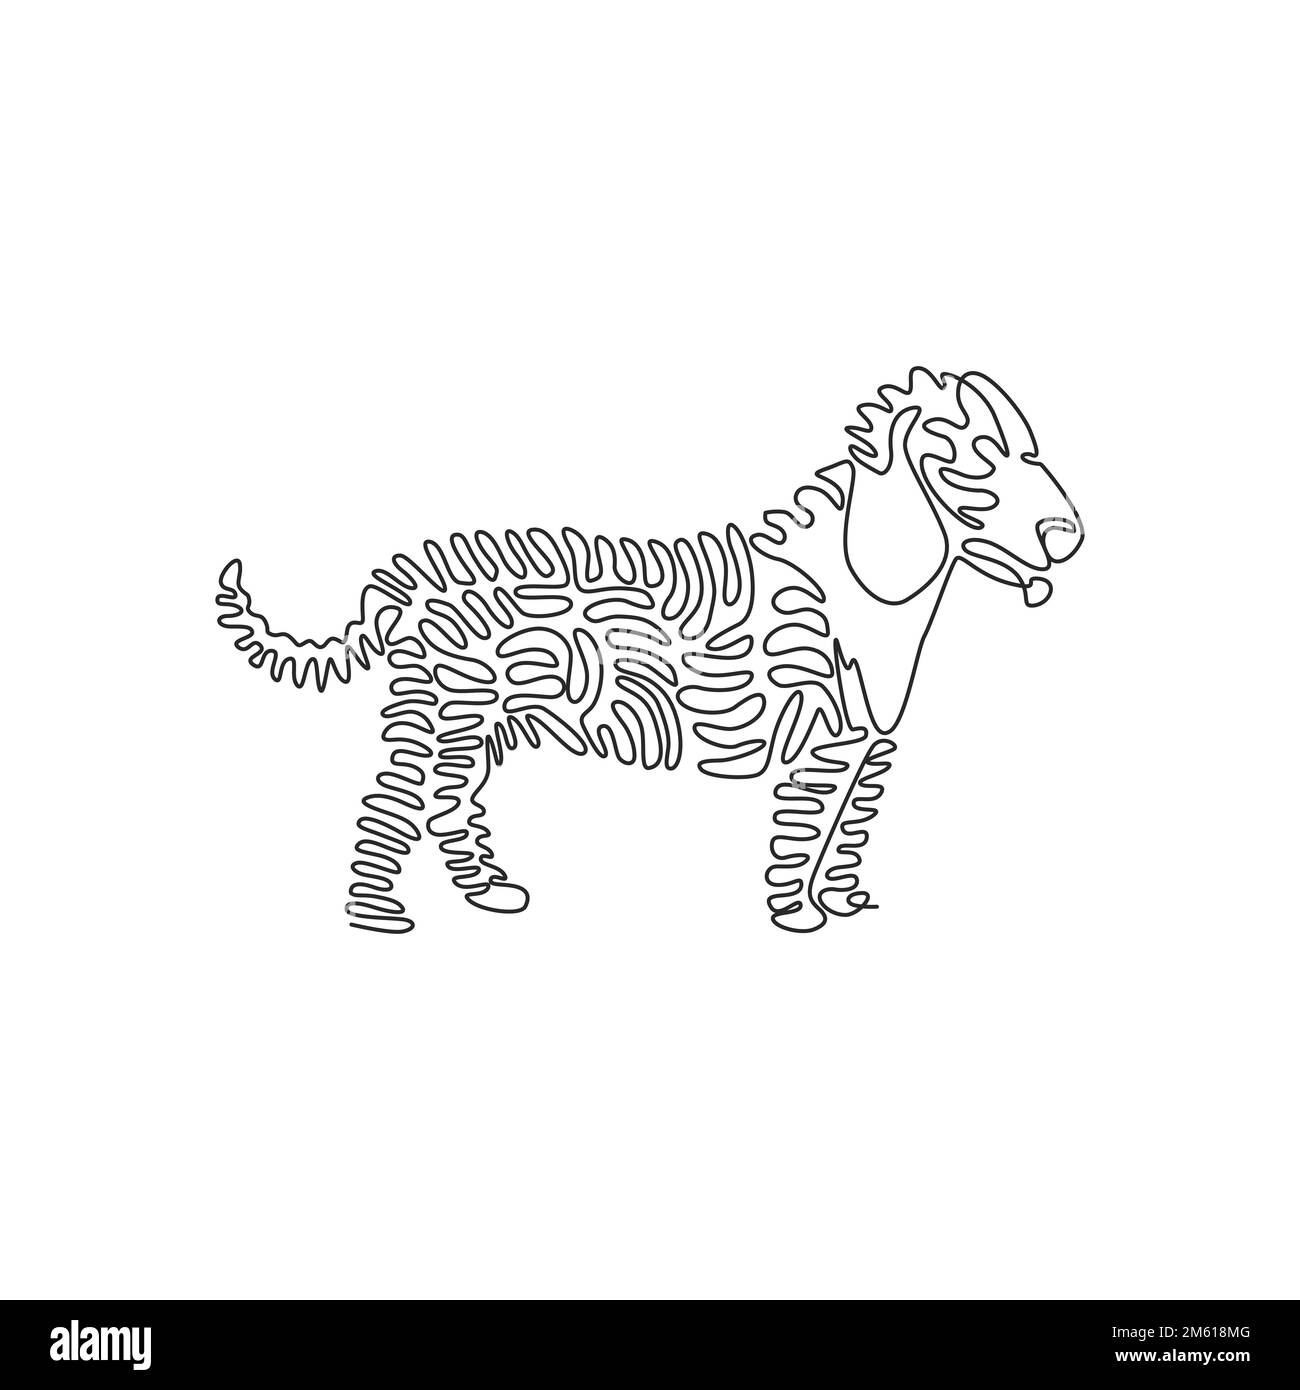 Eine lockige, einzeilige Zeichnung süßer abstrakter Hundekunst. Durchgehende Linien zeichnen einen Vektor zur Darstellung eines freundlichen Haustieres als Symbol Stock Vektor